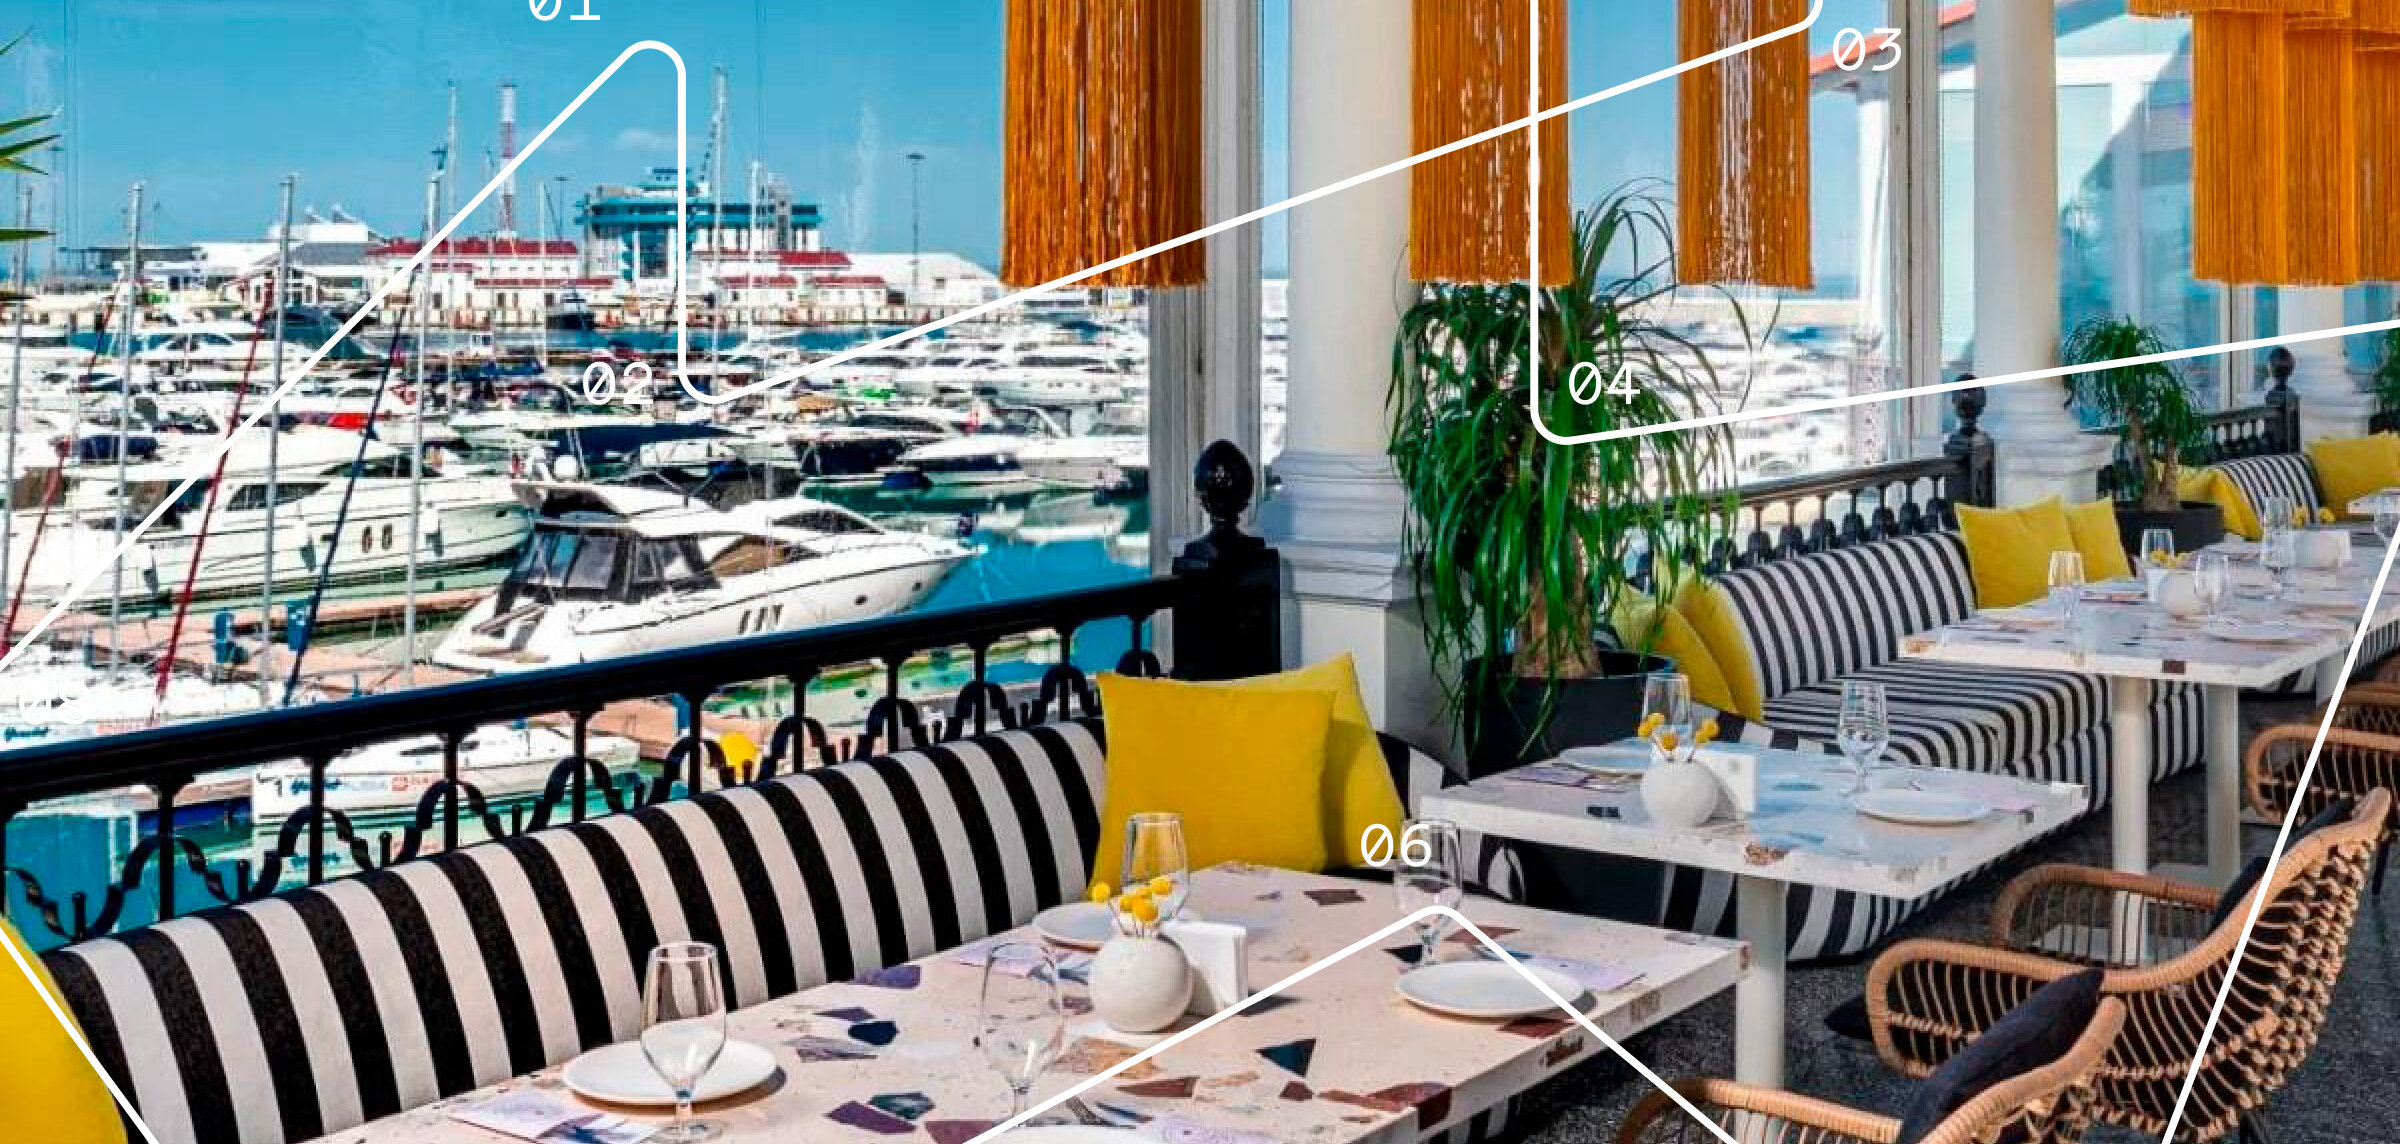 Рестораны и кафе Сочи: завтрак на набережной, обед с видом на яхты и ужин на мягких пляжных диванах